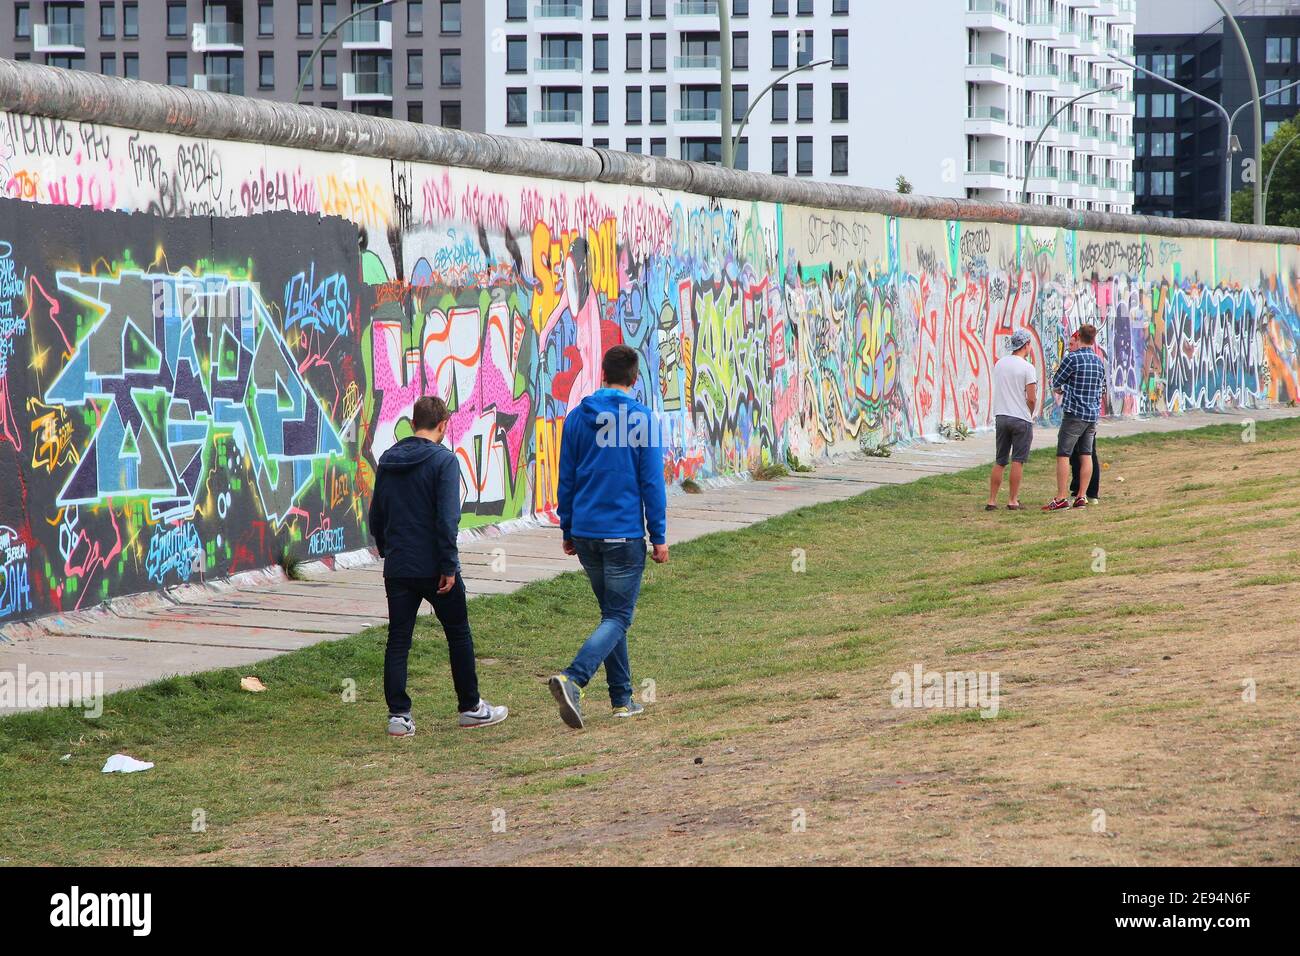 BERLIN, ALLEMAGNE - 26 août 2014 : personnes visitent le Mur de Berlin (Berliner Mauer). Rideau de fer emblématique de Berlin divisé la frontière dans les années 1961-1989. Banque D'Images